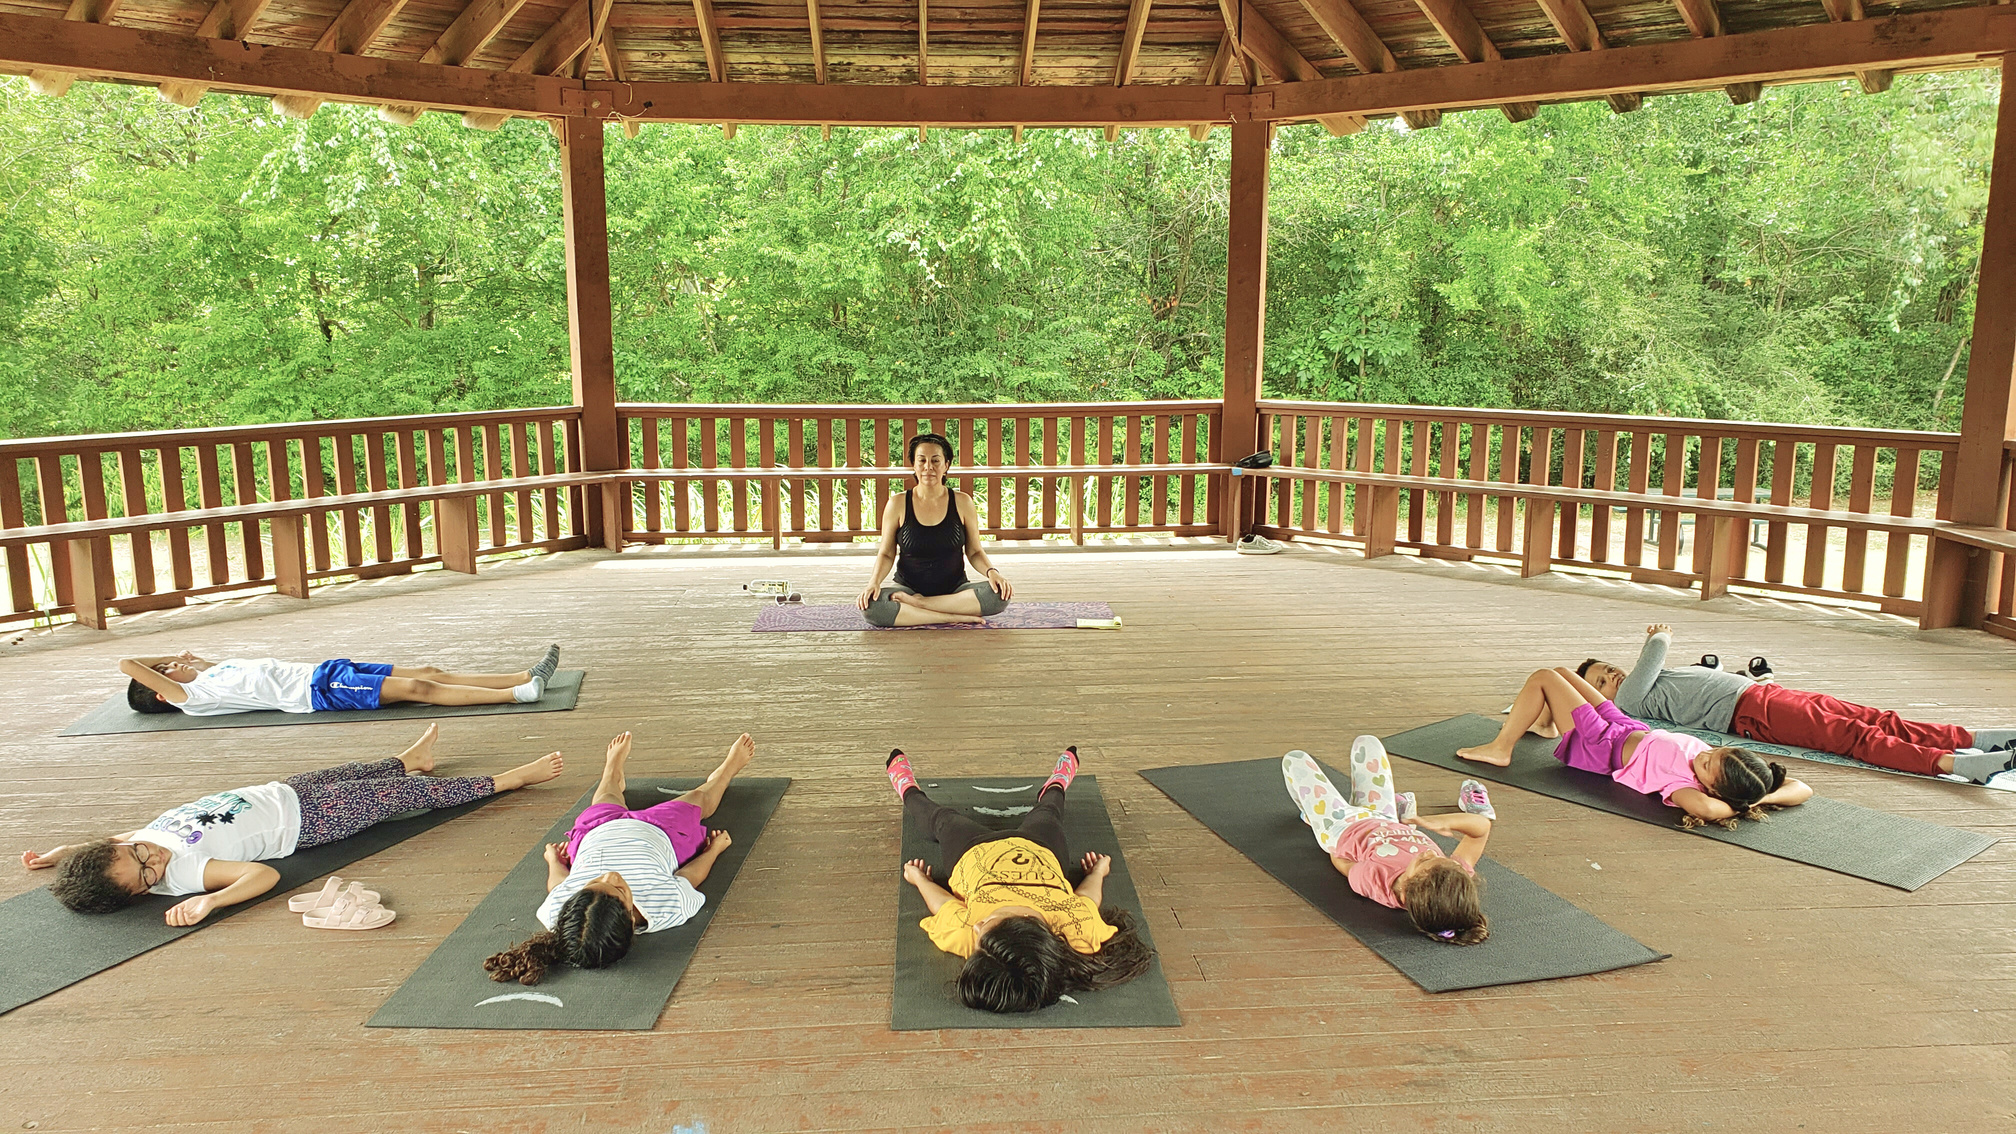 Arkimusa Kids Club, Yoga y Meditación, postura de relajación. 
Los niños necesitan crecer con calma, alegría y armonía. 